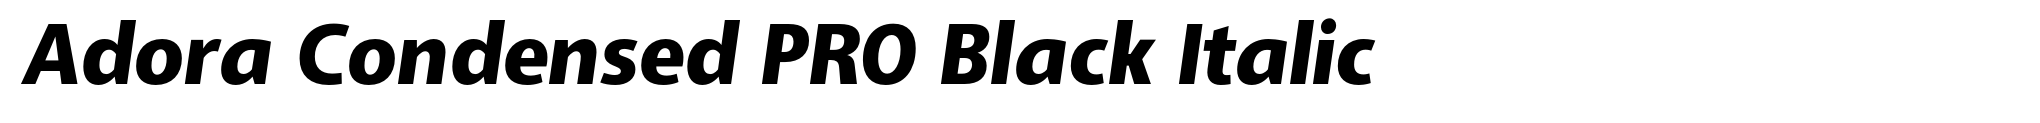 Adora Condensed PRO Black Italic image